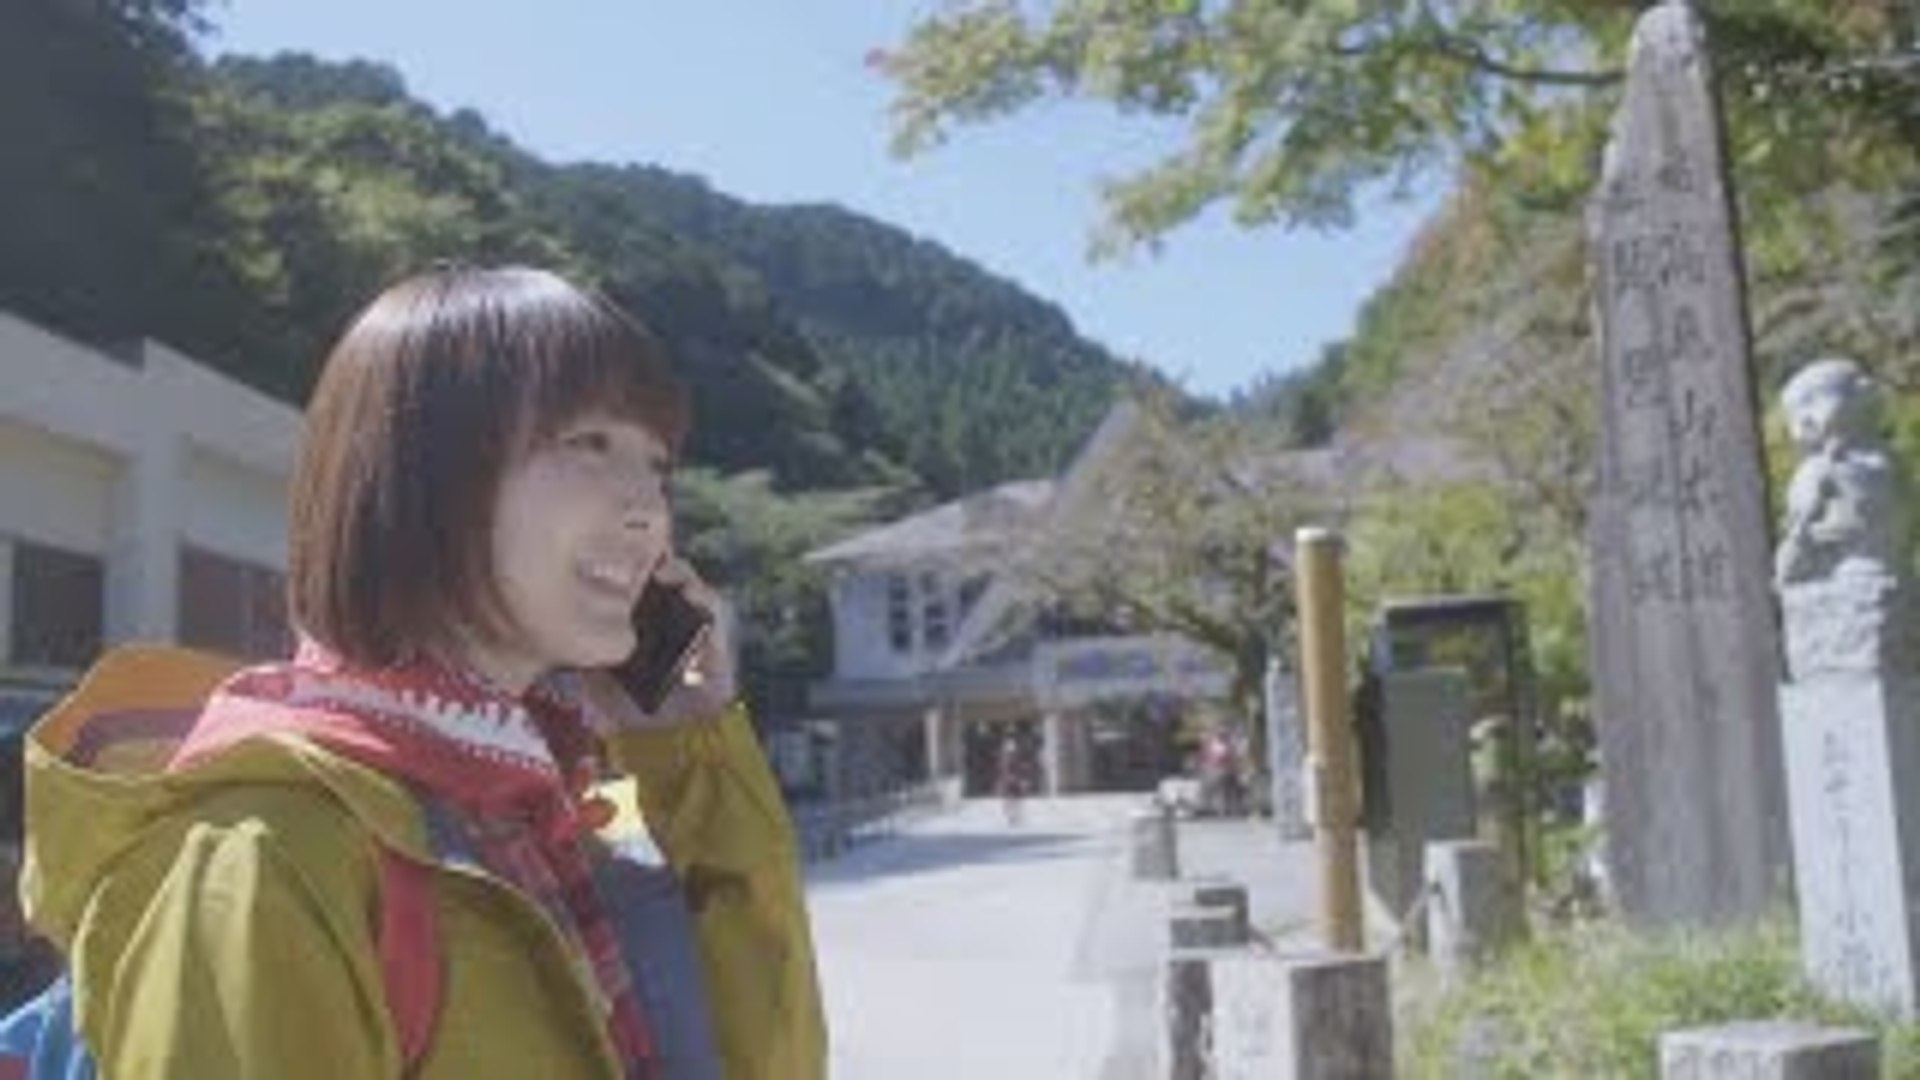 花澤香菜の日帰り高尾山 With Aquos Sharp スマートフォンaquos 影片 Dailymotion